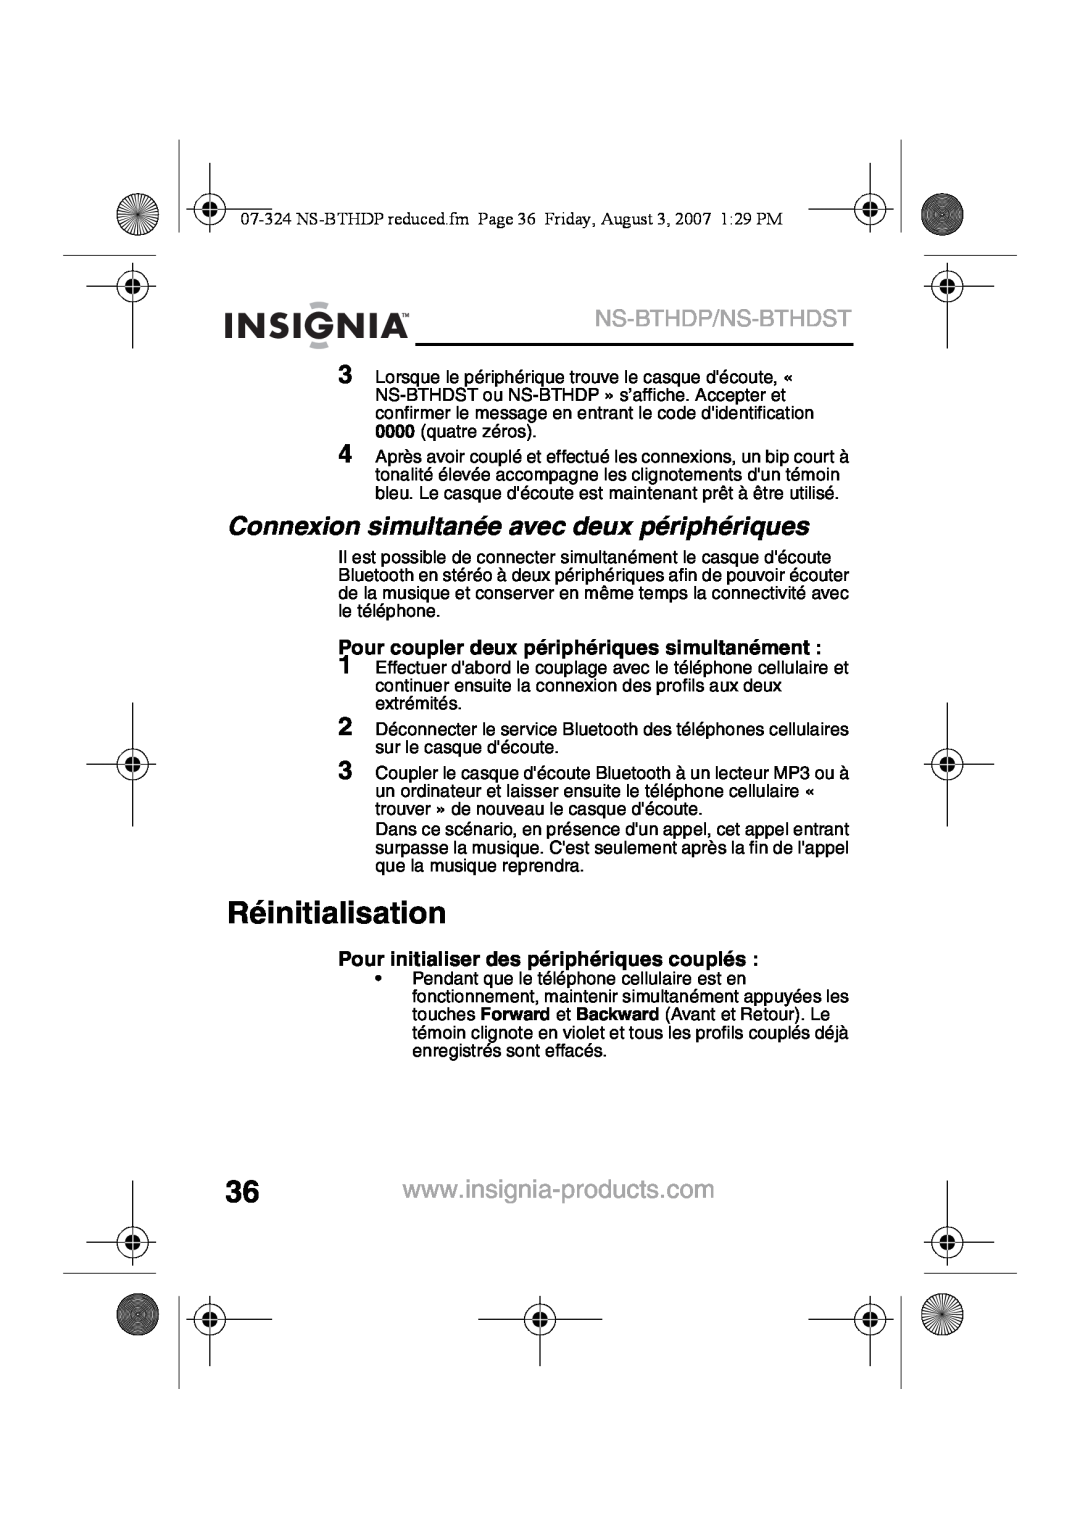 Insignia NS-BTHDST manual Réinitialisation, Connexion simultanée avec deux périphériques, Ns-Bthdp/Ns-Bthdst 